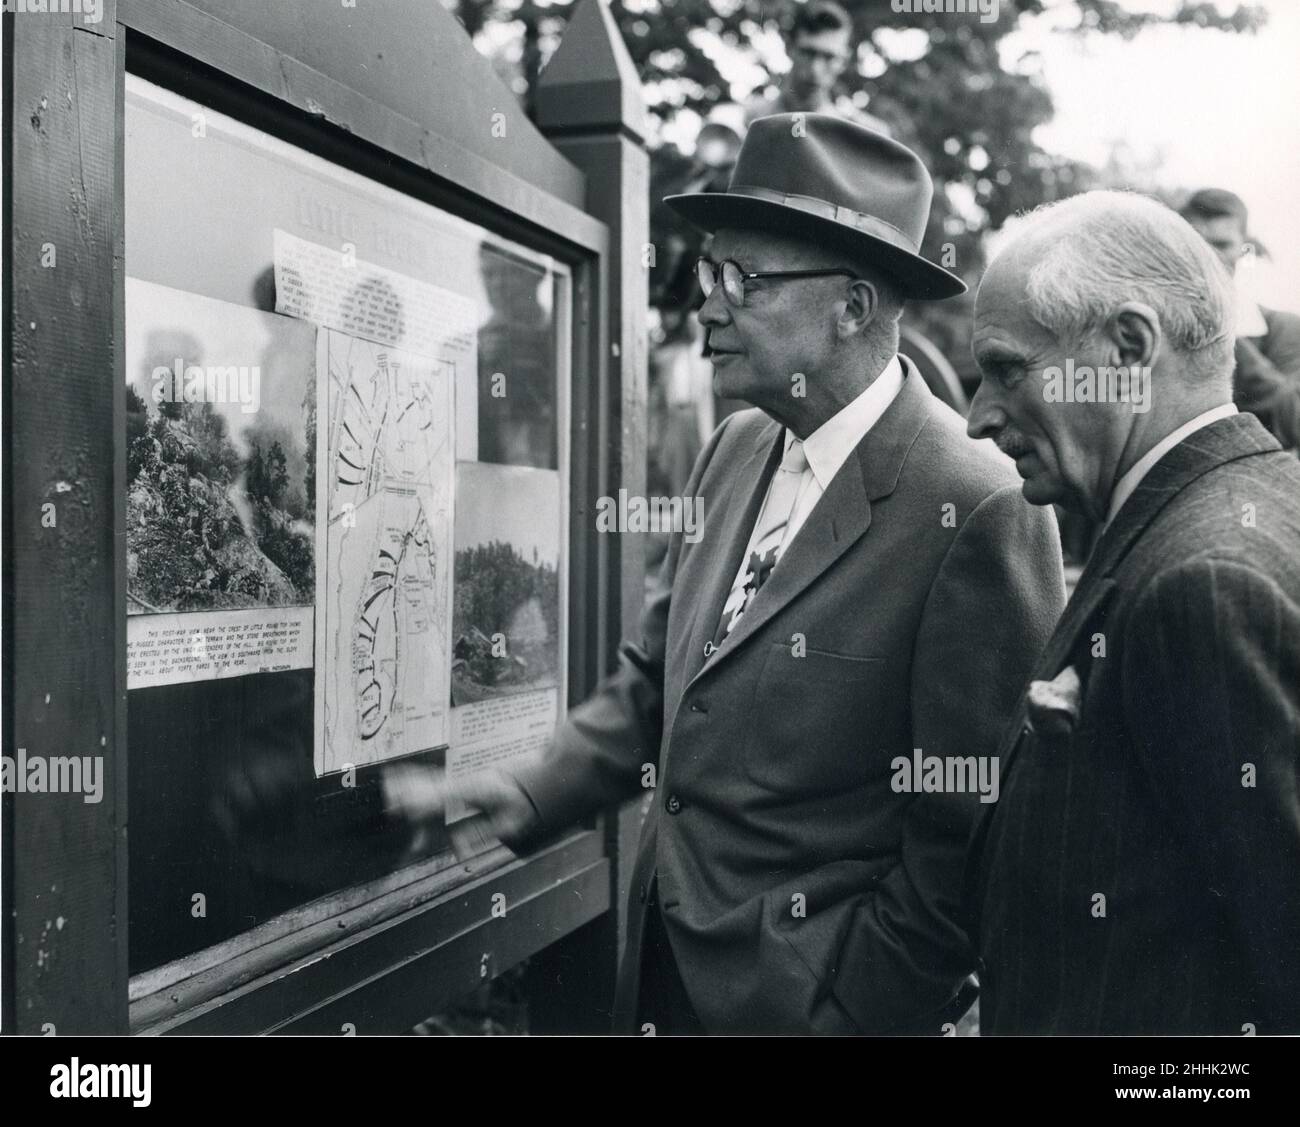 Gettysburg, PA, 12 de mayo de 1957 -- El presidente Eisenhower y el mariscal de campo Bernard Montgomery visitan el campo de batalla de Gettysburg cerca de la casa del presidente. Los dos estudian un quiosco que muestra mapas de la batalla. Foto: Abbie Rowe Foto de stock